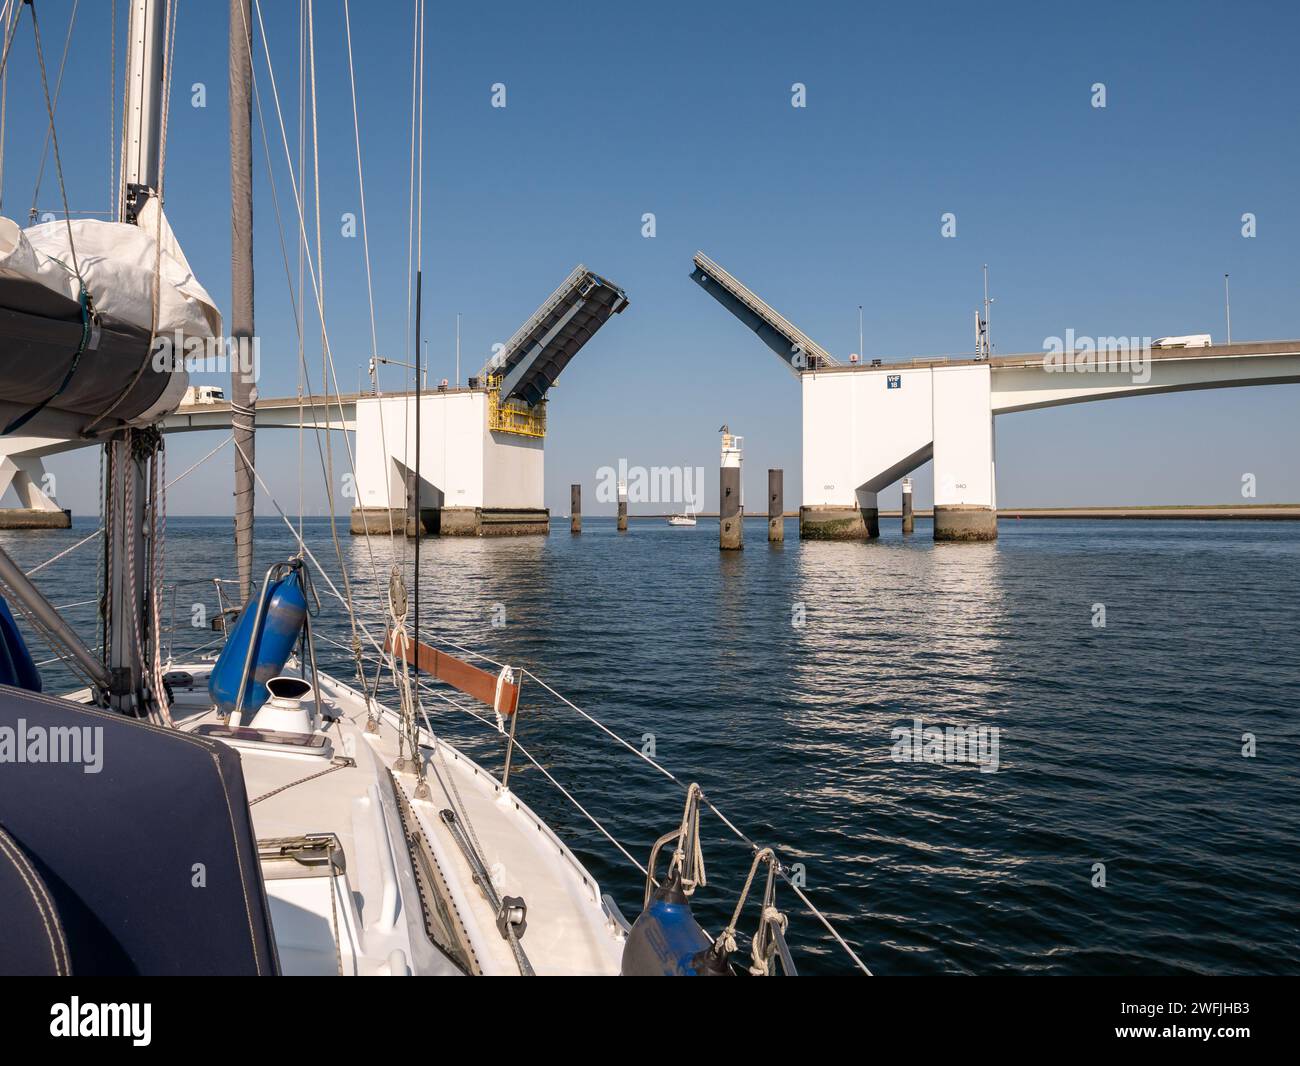 Bridge opening of Eastern Scheldt Bridge for sailboats with high masts, Eastern Scheldt, Zeeland, Netherlands Stock Photo